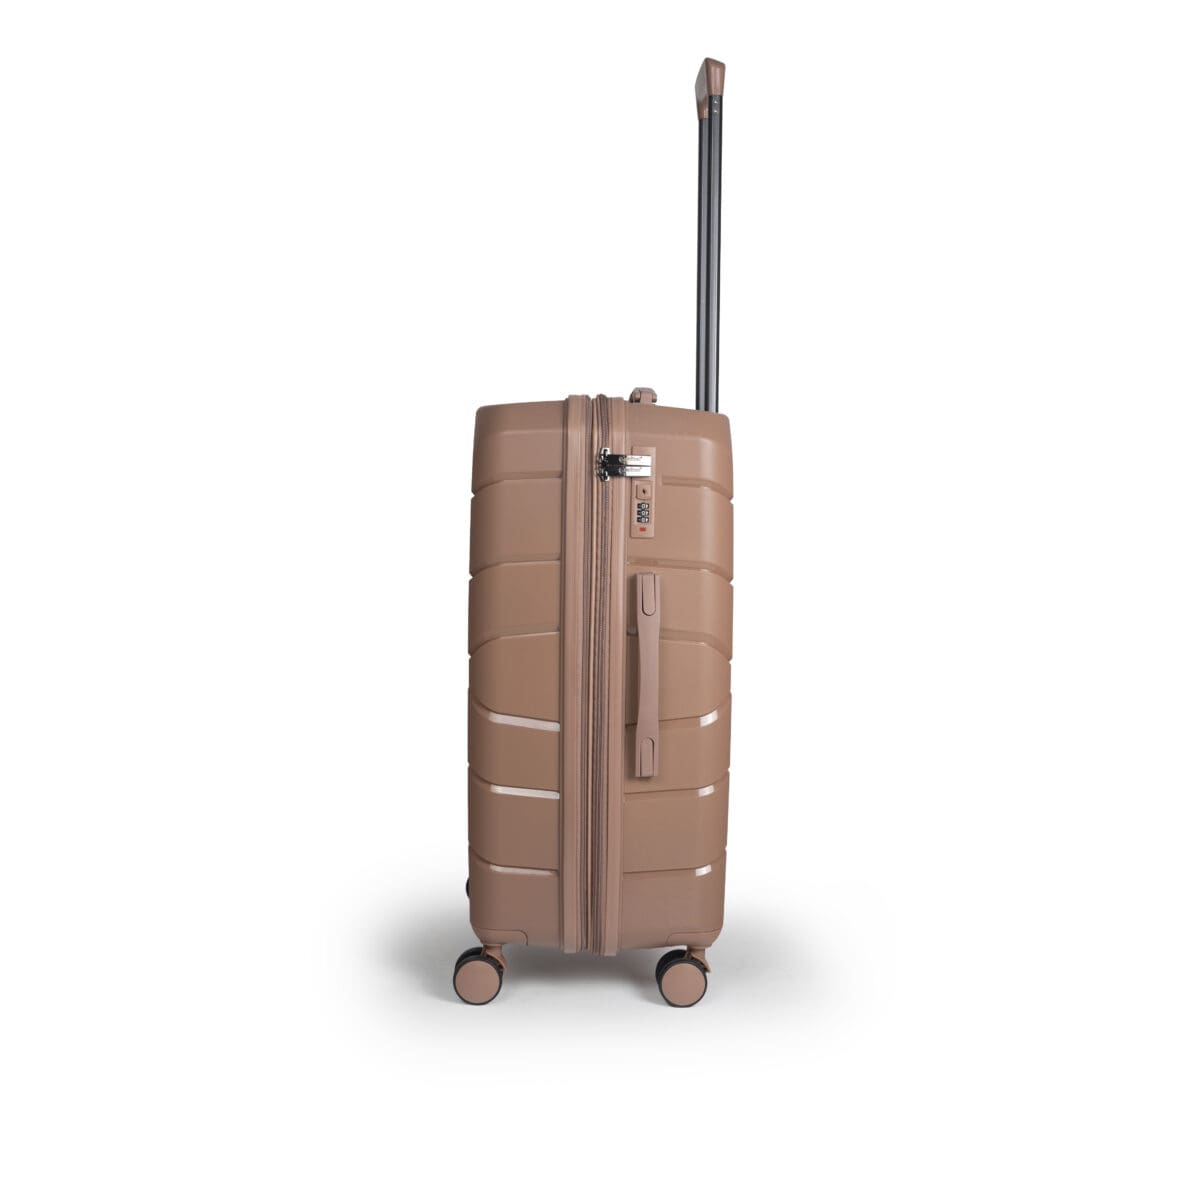 Αριστερή πλευρά βαλίτσας μεσαία με tsa lock διπλά ροδάκια από πολυπροπυλένιο άθραυστο υλικό και επέκταση σε ροζ χρώμα